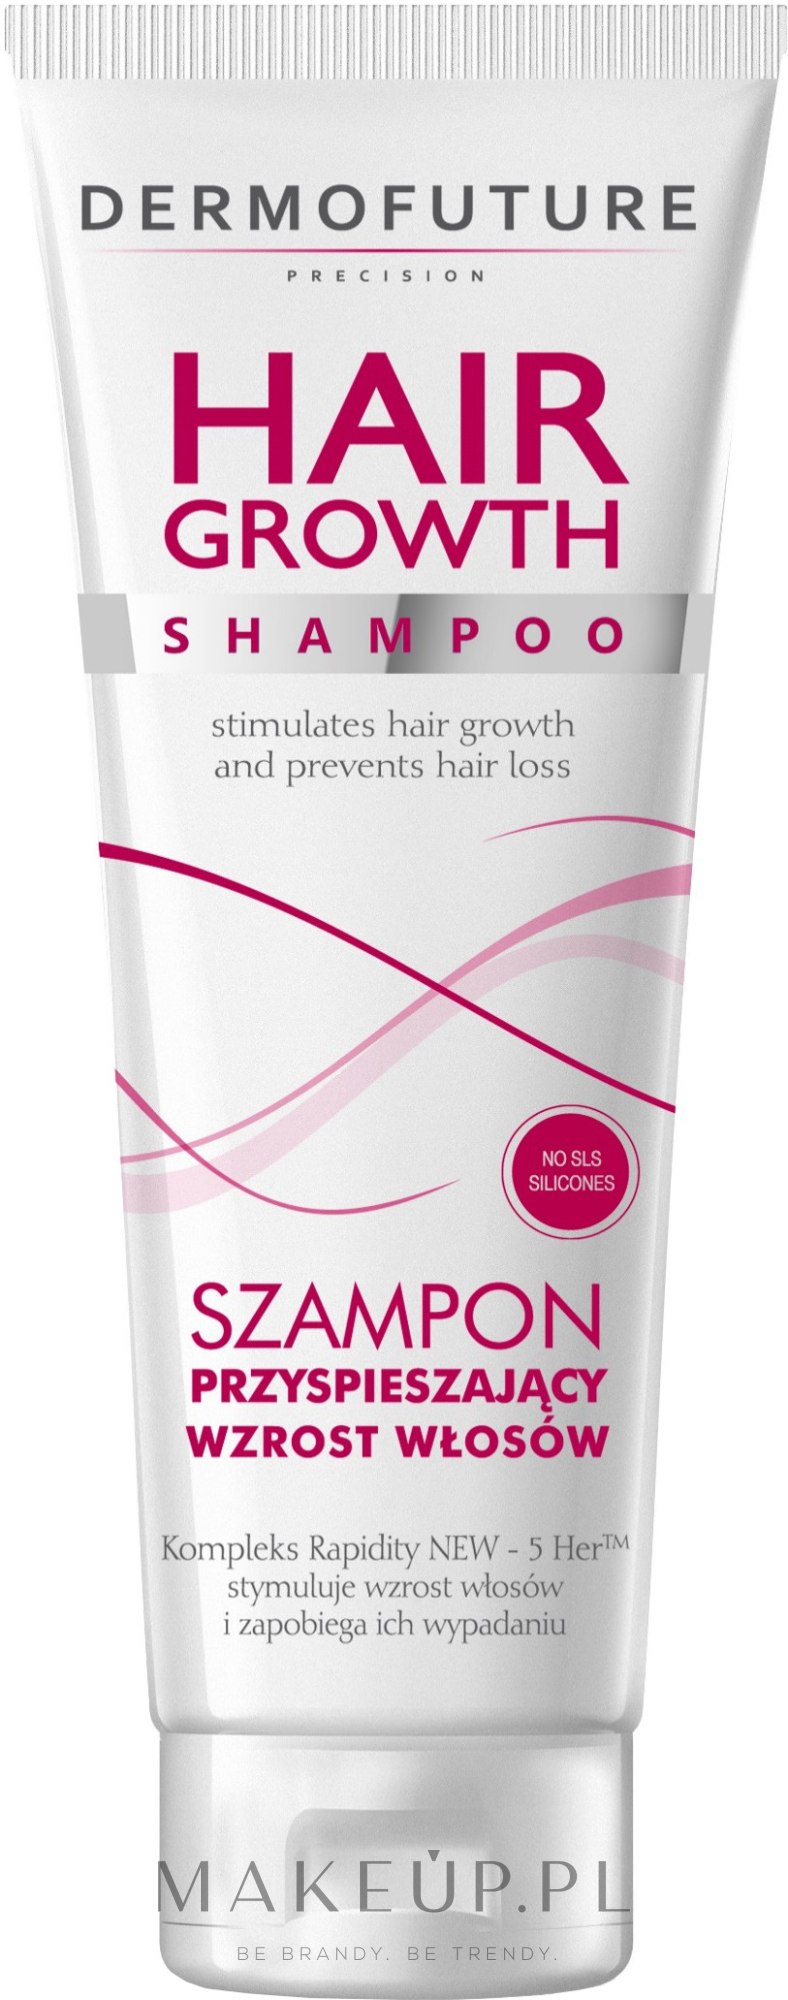 dermofuture szampon do włosów z aktywnym węglem blogspot